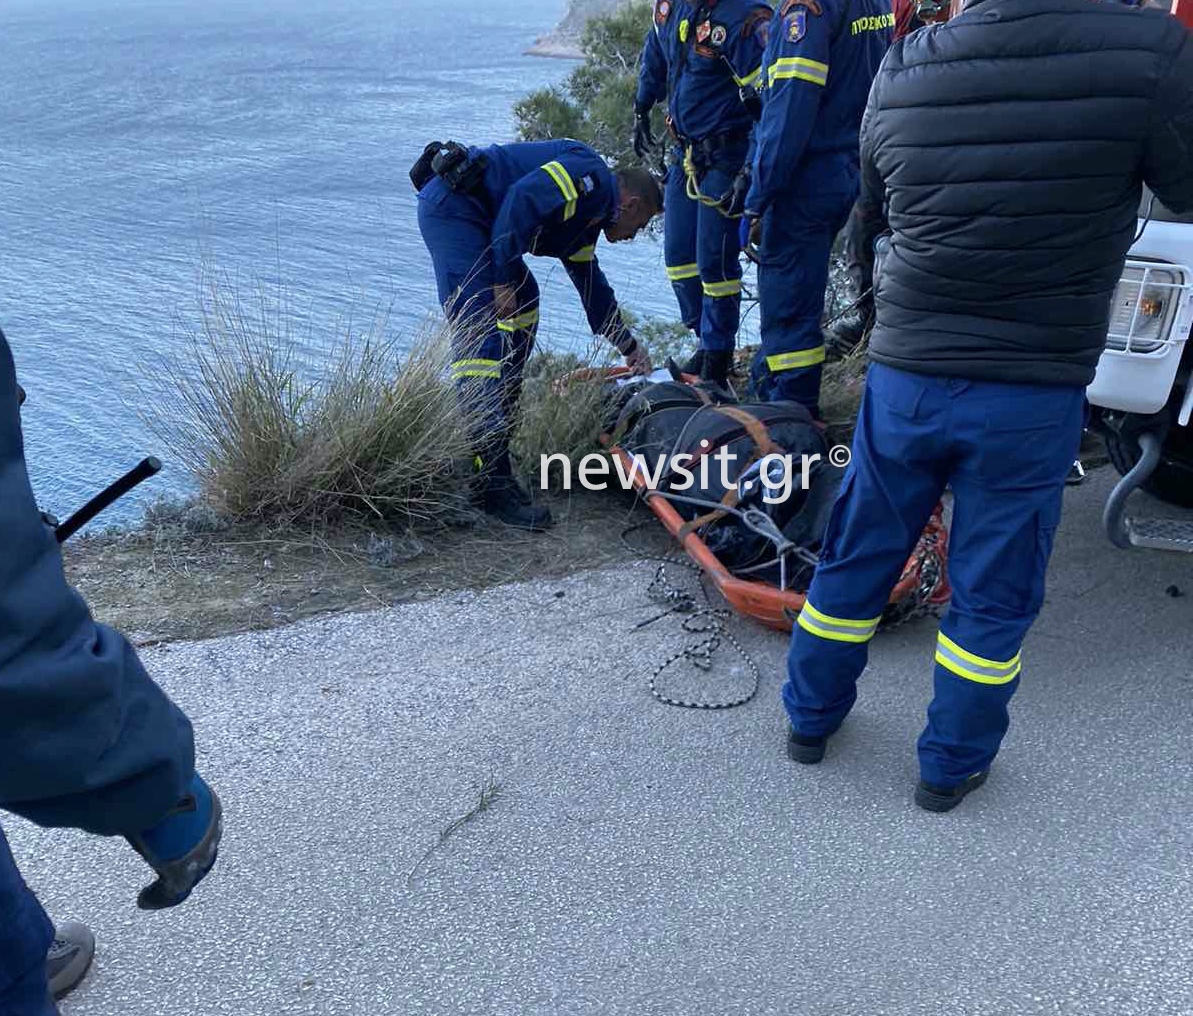 Θρίλερ στην Κερατέα: Νεκρός ο 25χρονος οδηγός που έπεσε σε 70 μέτρα γκρεμό στην Κακιά Θάλασσα[photos]